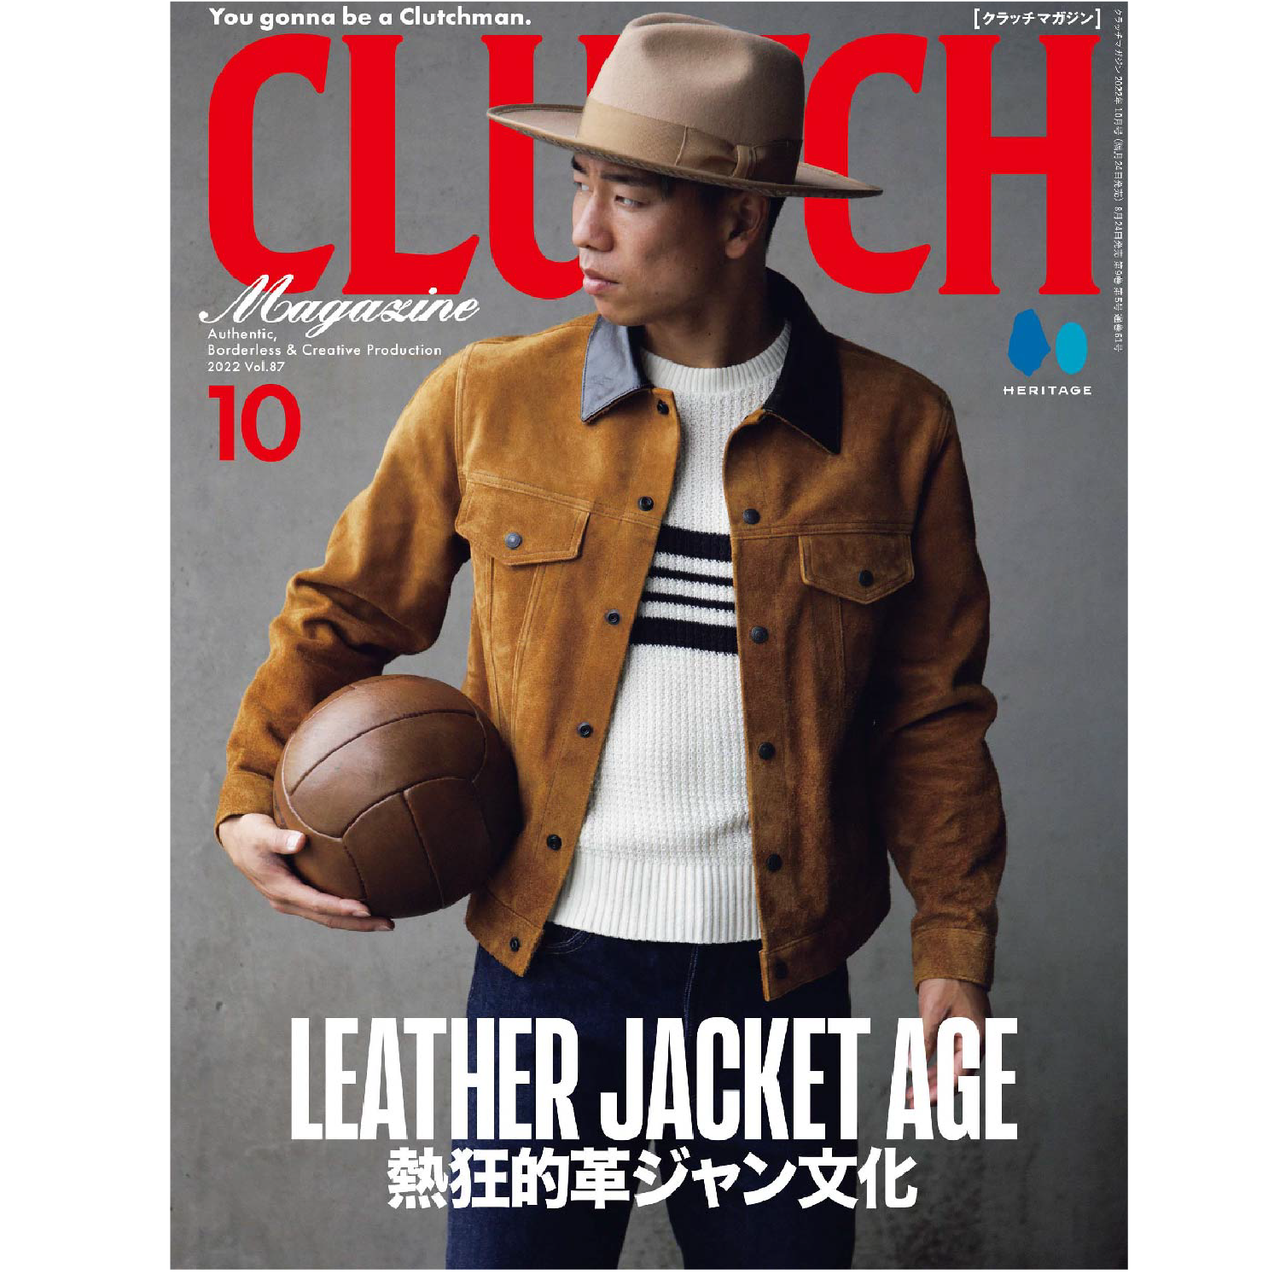 Clutch Magazine Vol. 87 "LEATHER JACKET AGE"-Magazine-Clutch Cafe